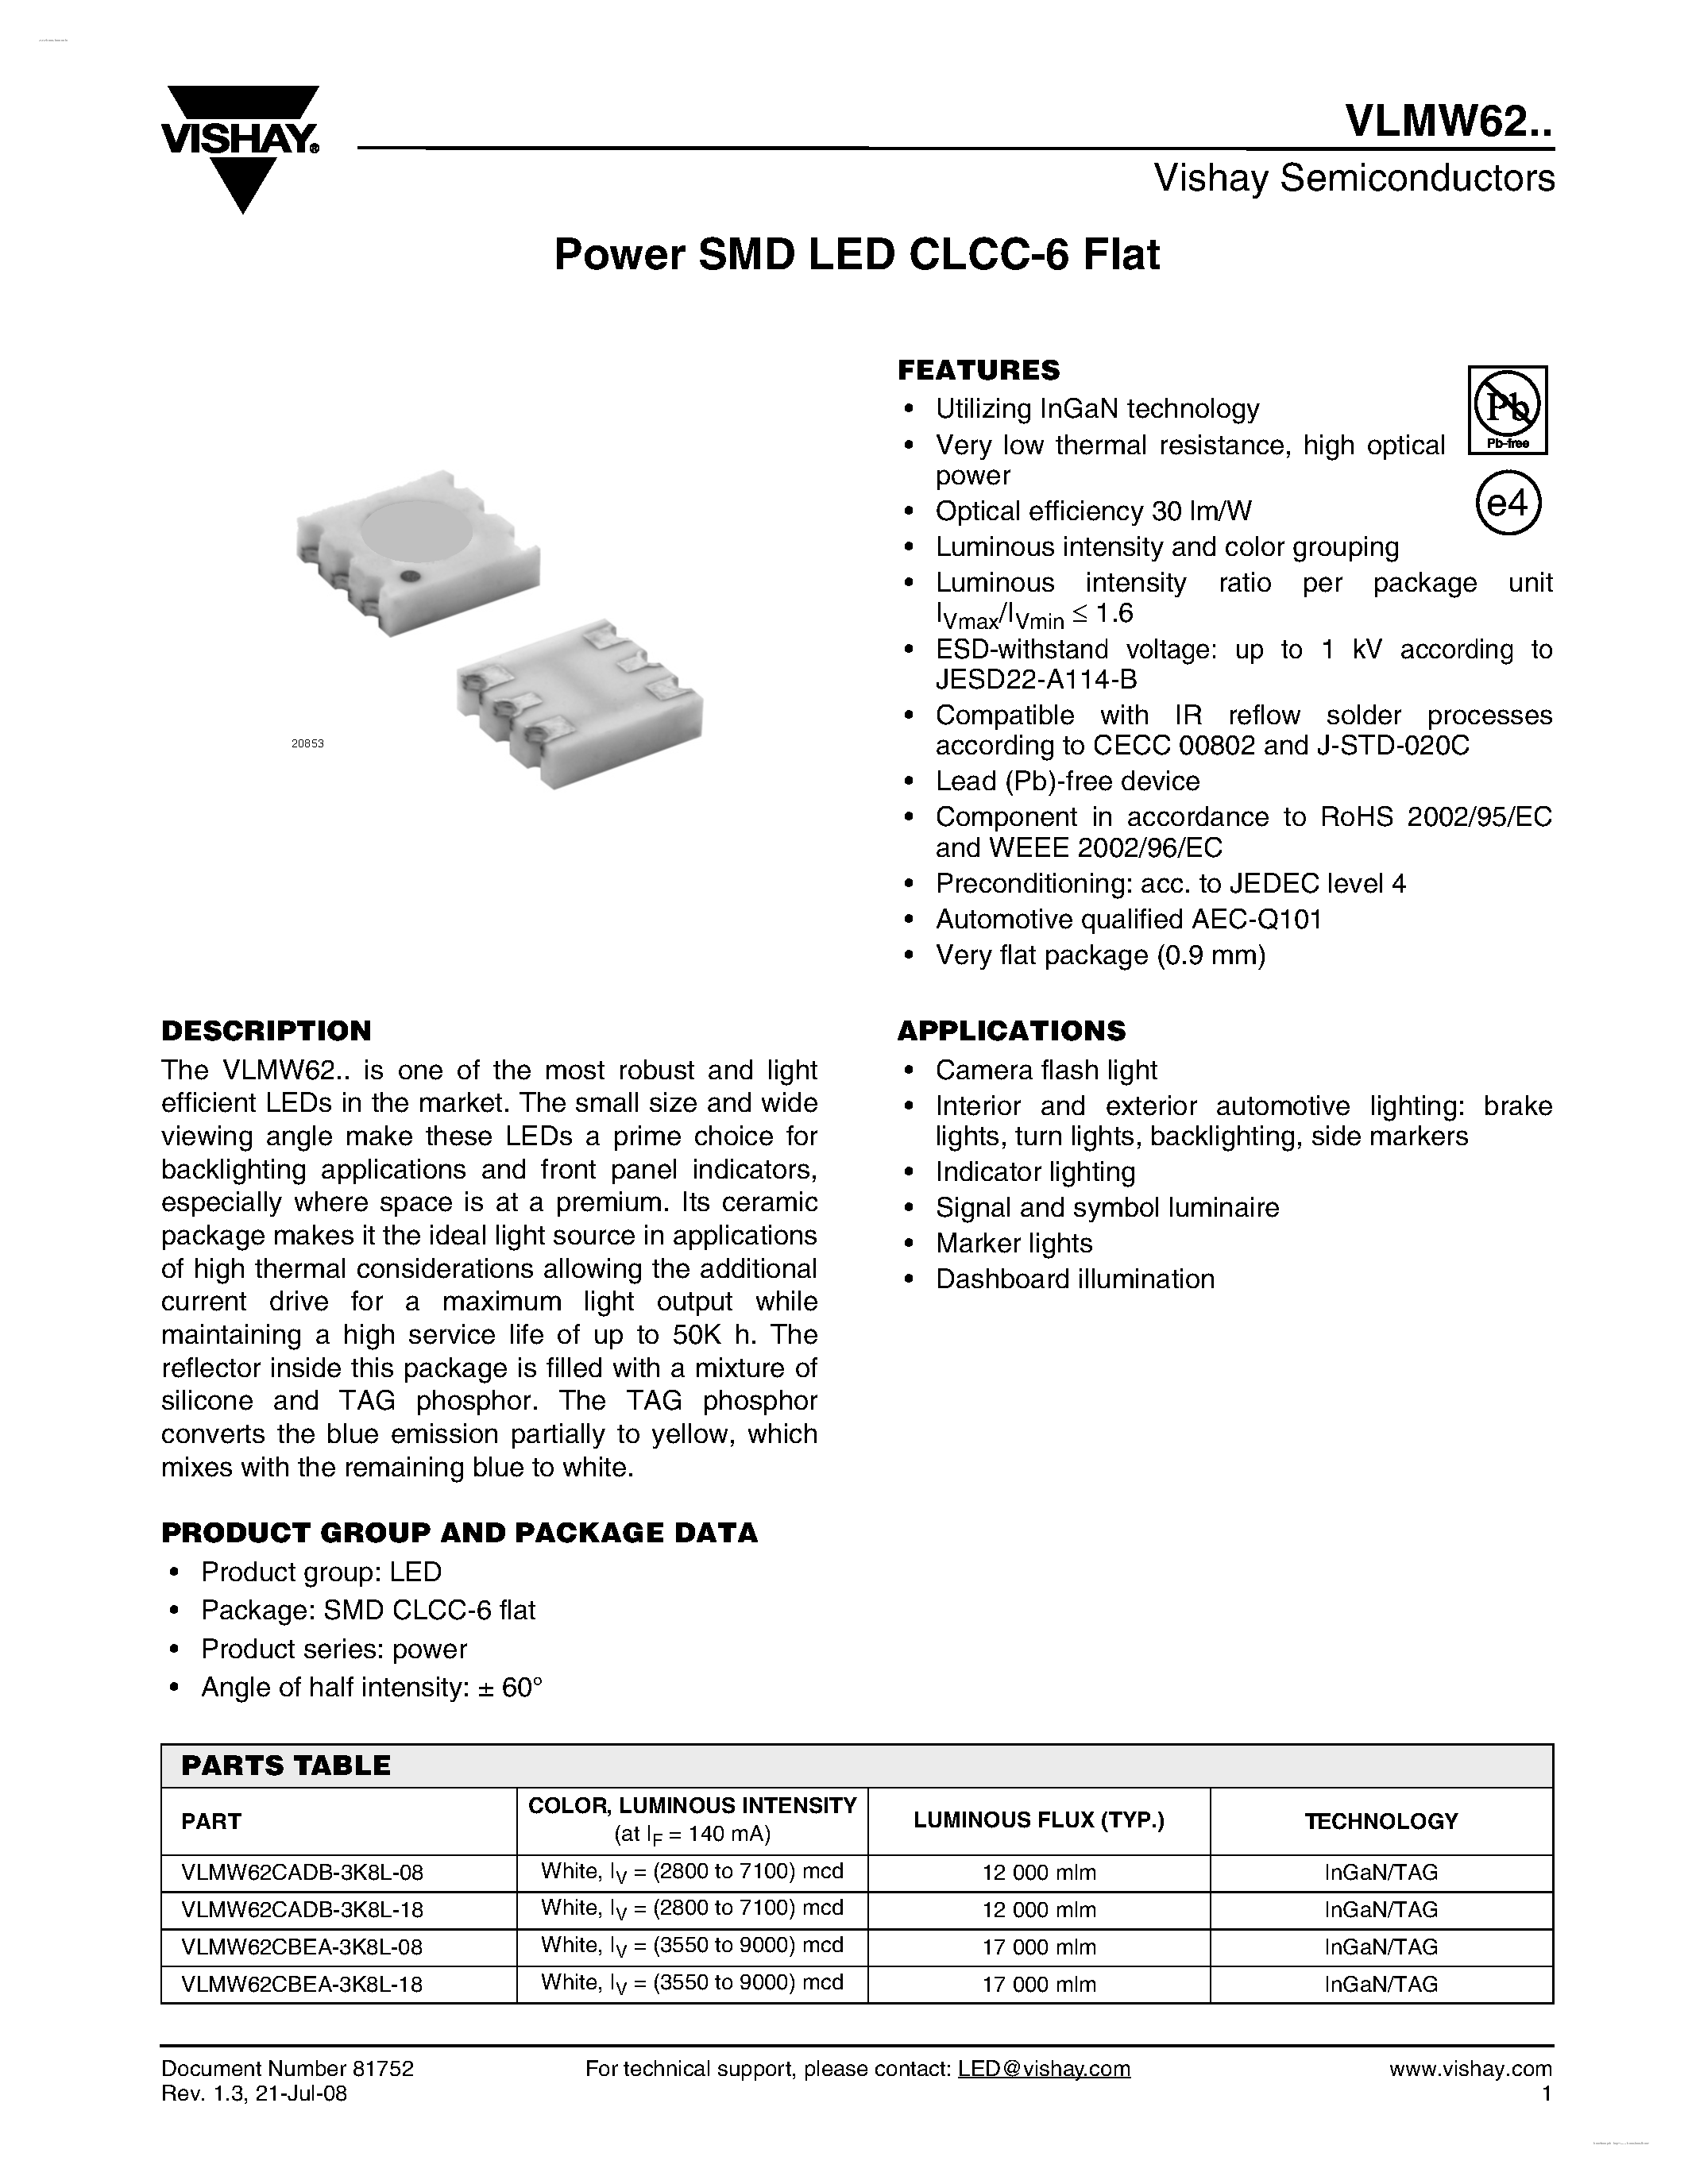 Даташит VLMW62 - Power SMD LED CLCC-6 Flat страница 1